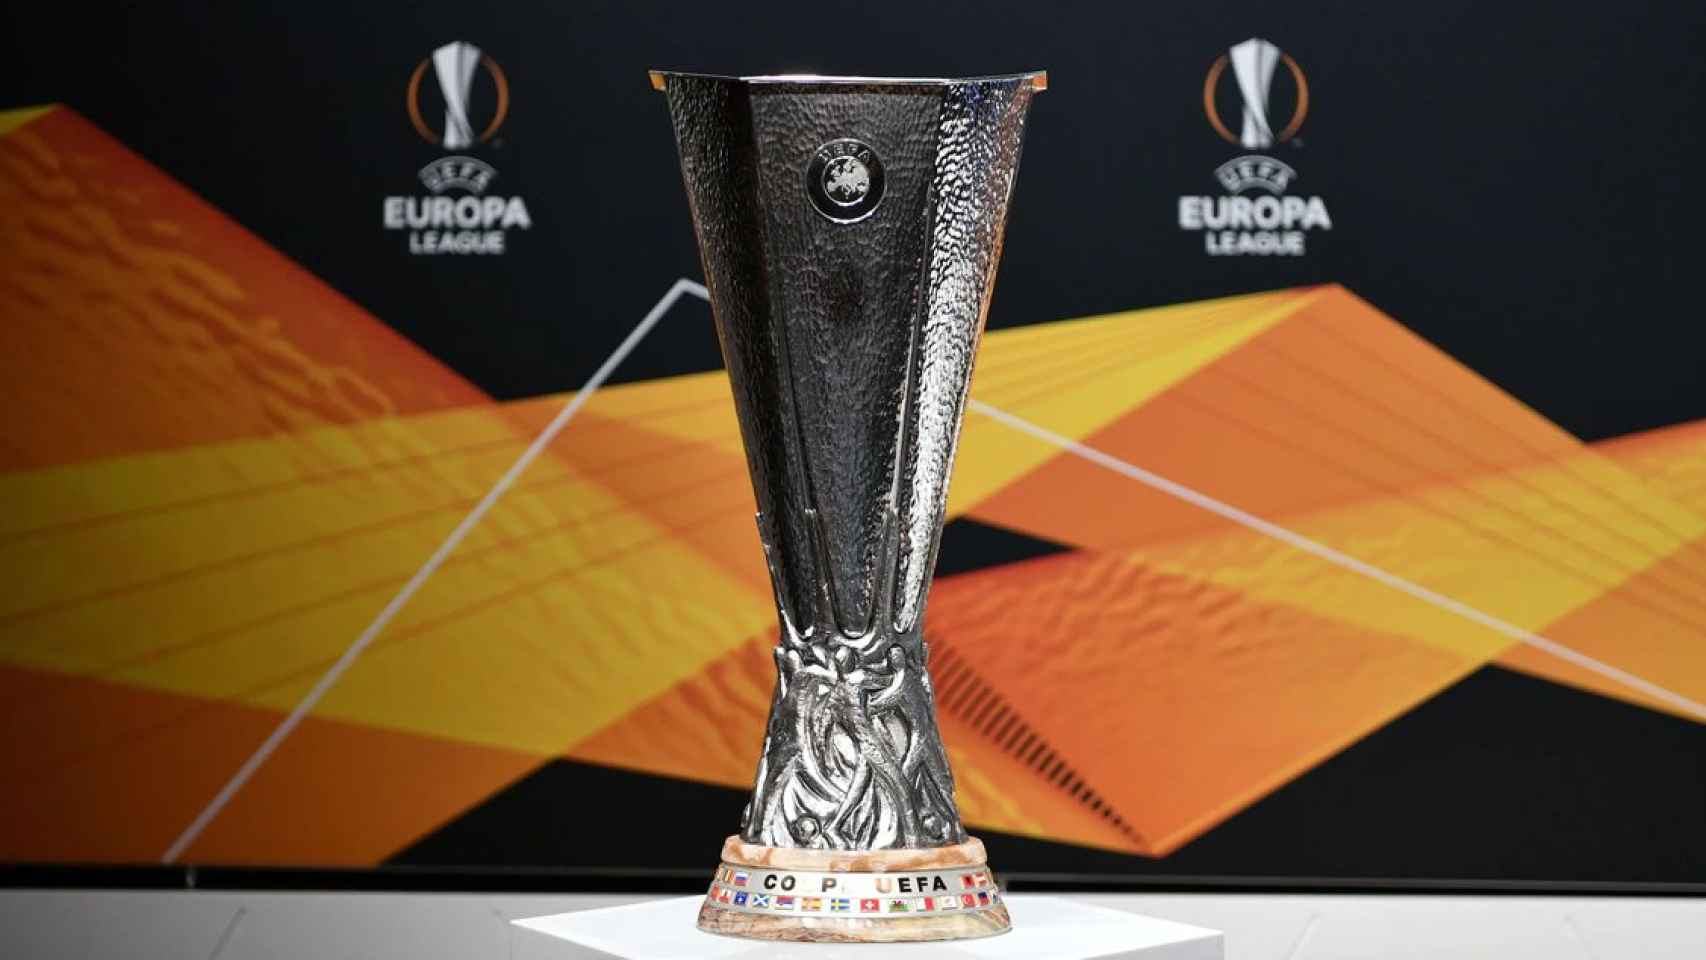 El trofeo de la Europa League, torneo que recibirá por segunda vez al Barça / UEFA